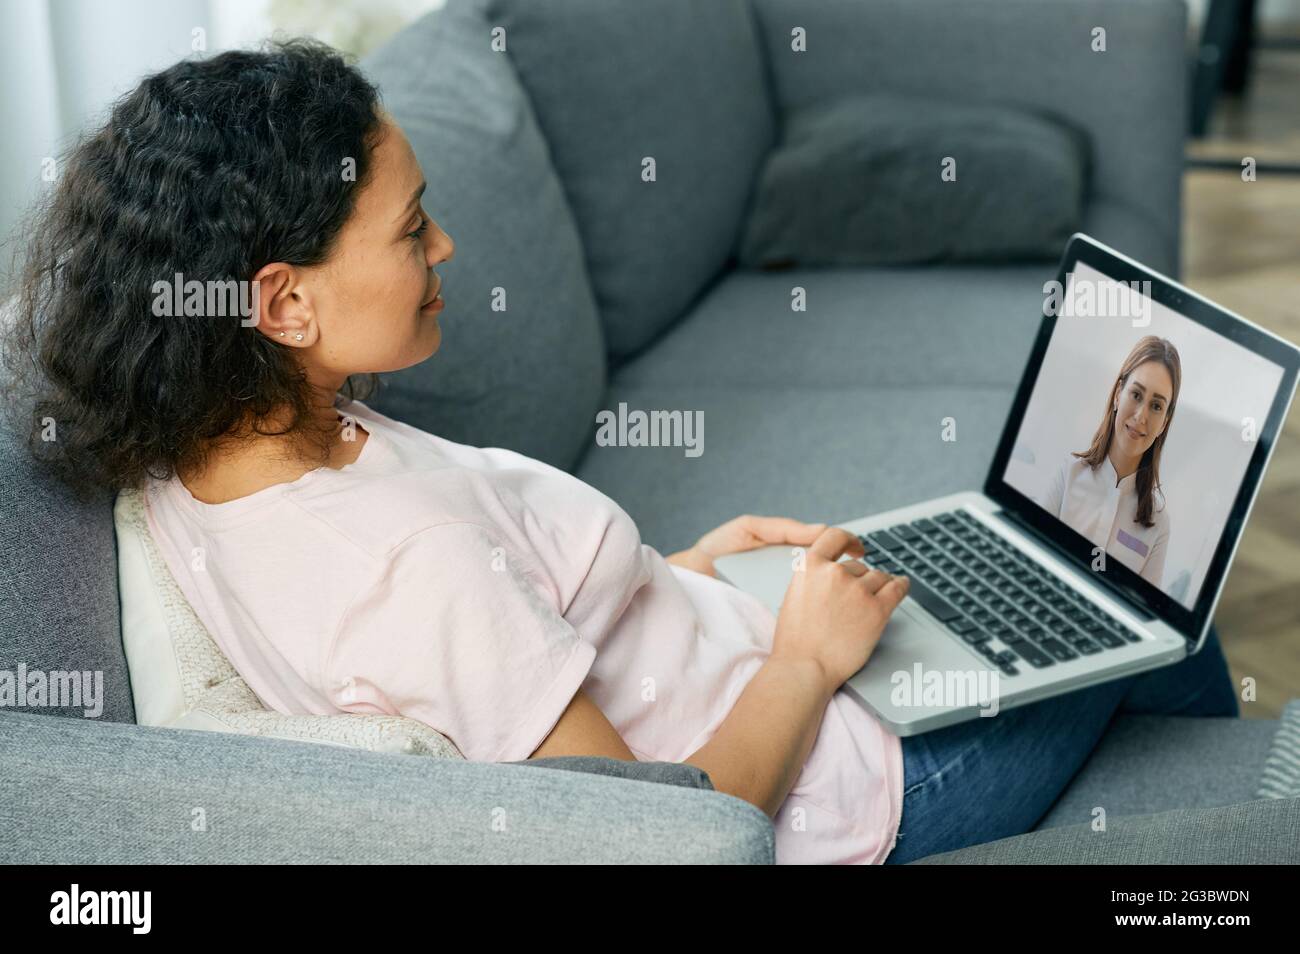 Frau im Online-Gespräch mit ihrem Arzt. Medizintechnik, Videochat mit einem Arzt. Arztkonsultation online Stockfoto